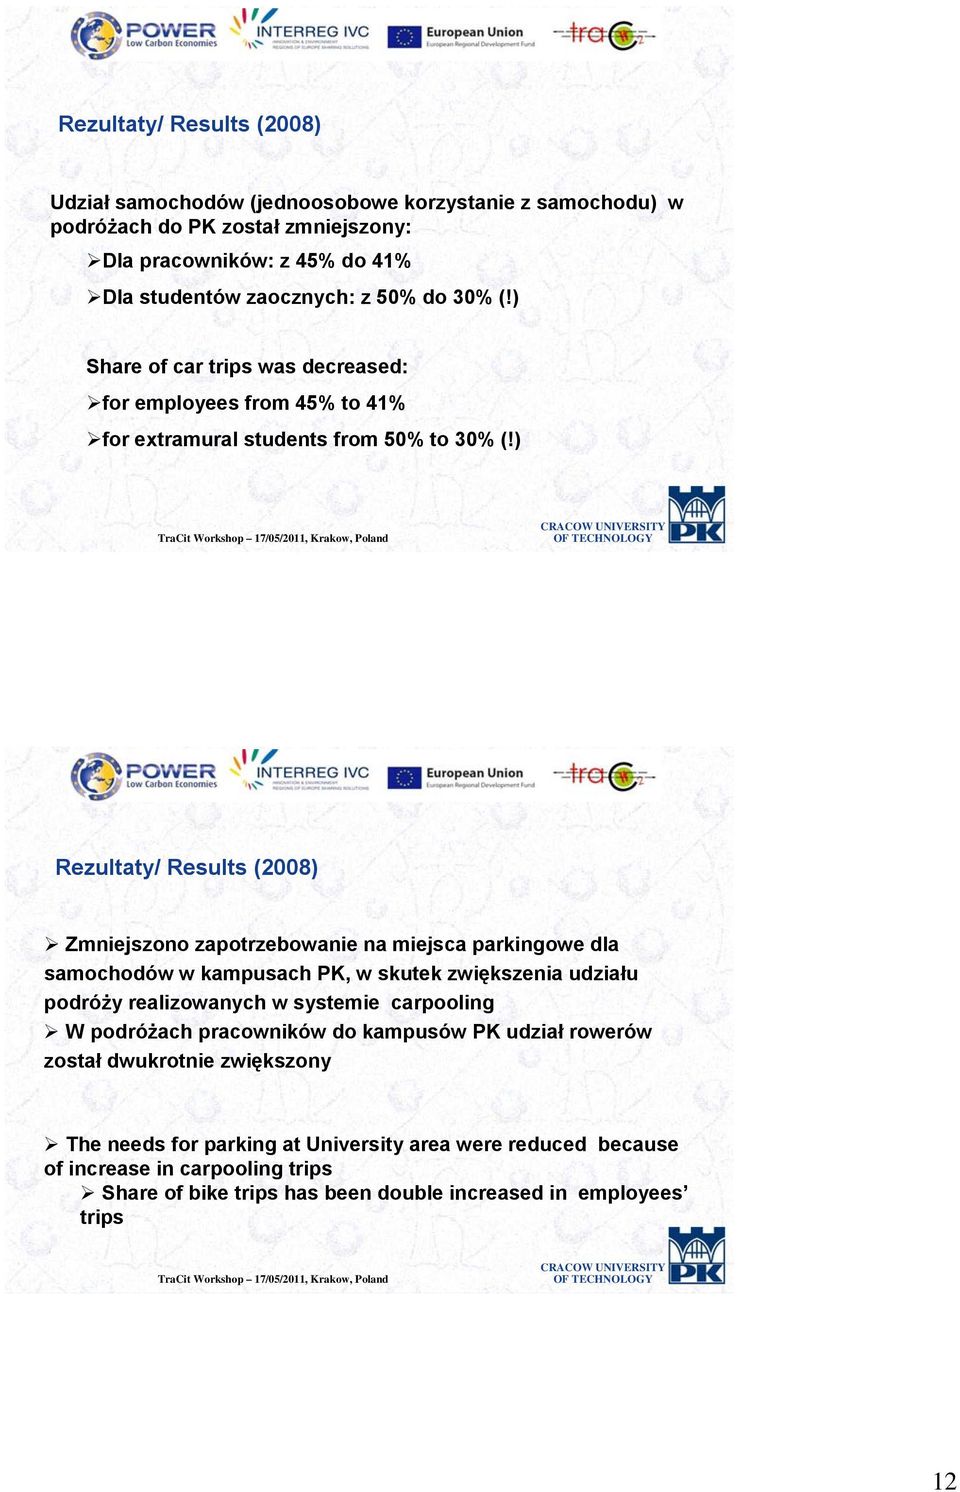 ) Rezultaty/ Results (2008) Zmniejszono zapotrzebowanie na miejsca parkingowe dla samochodów w kampusach PK, w skutek zwiększenia udziału podróży realizowanych w systemie carpooling